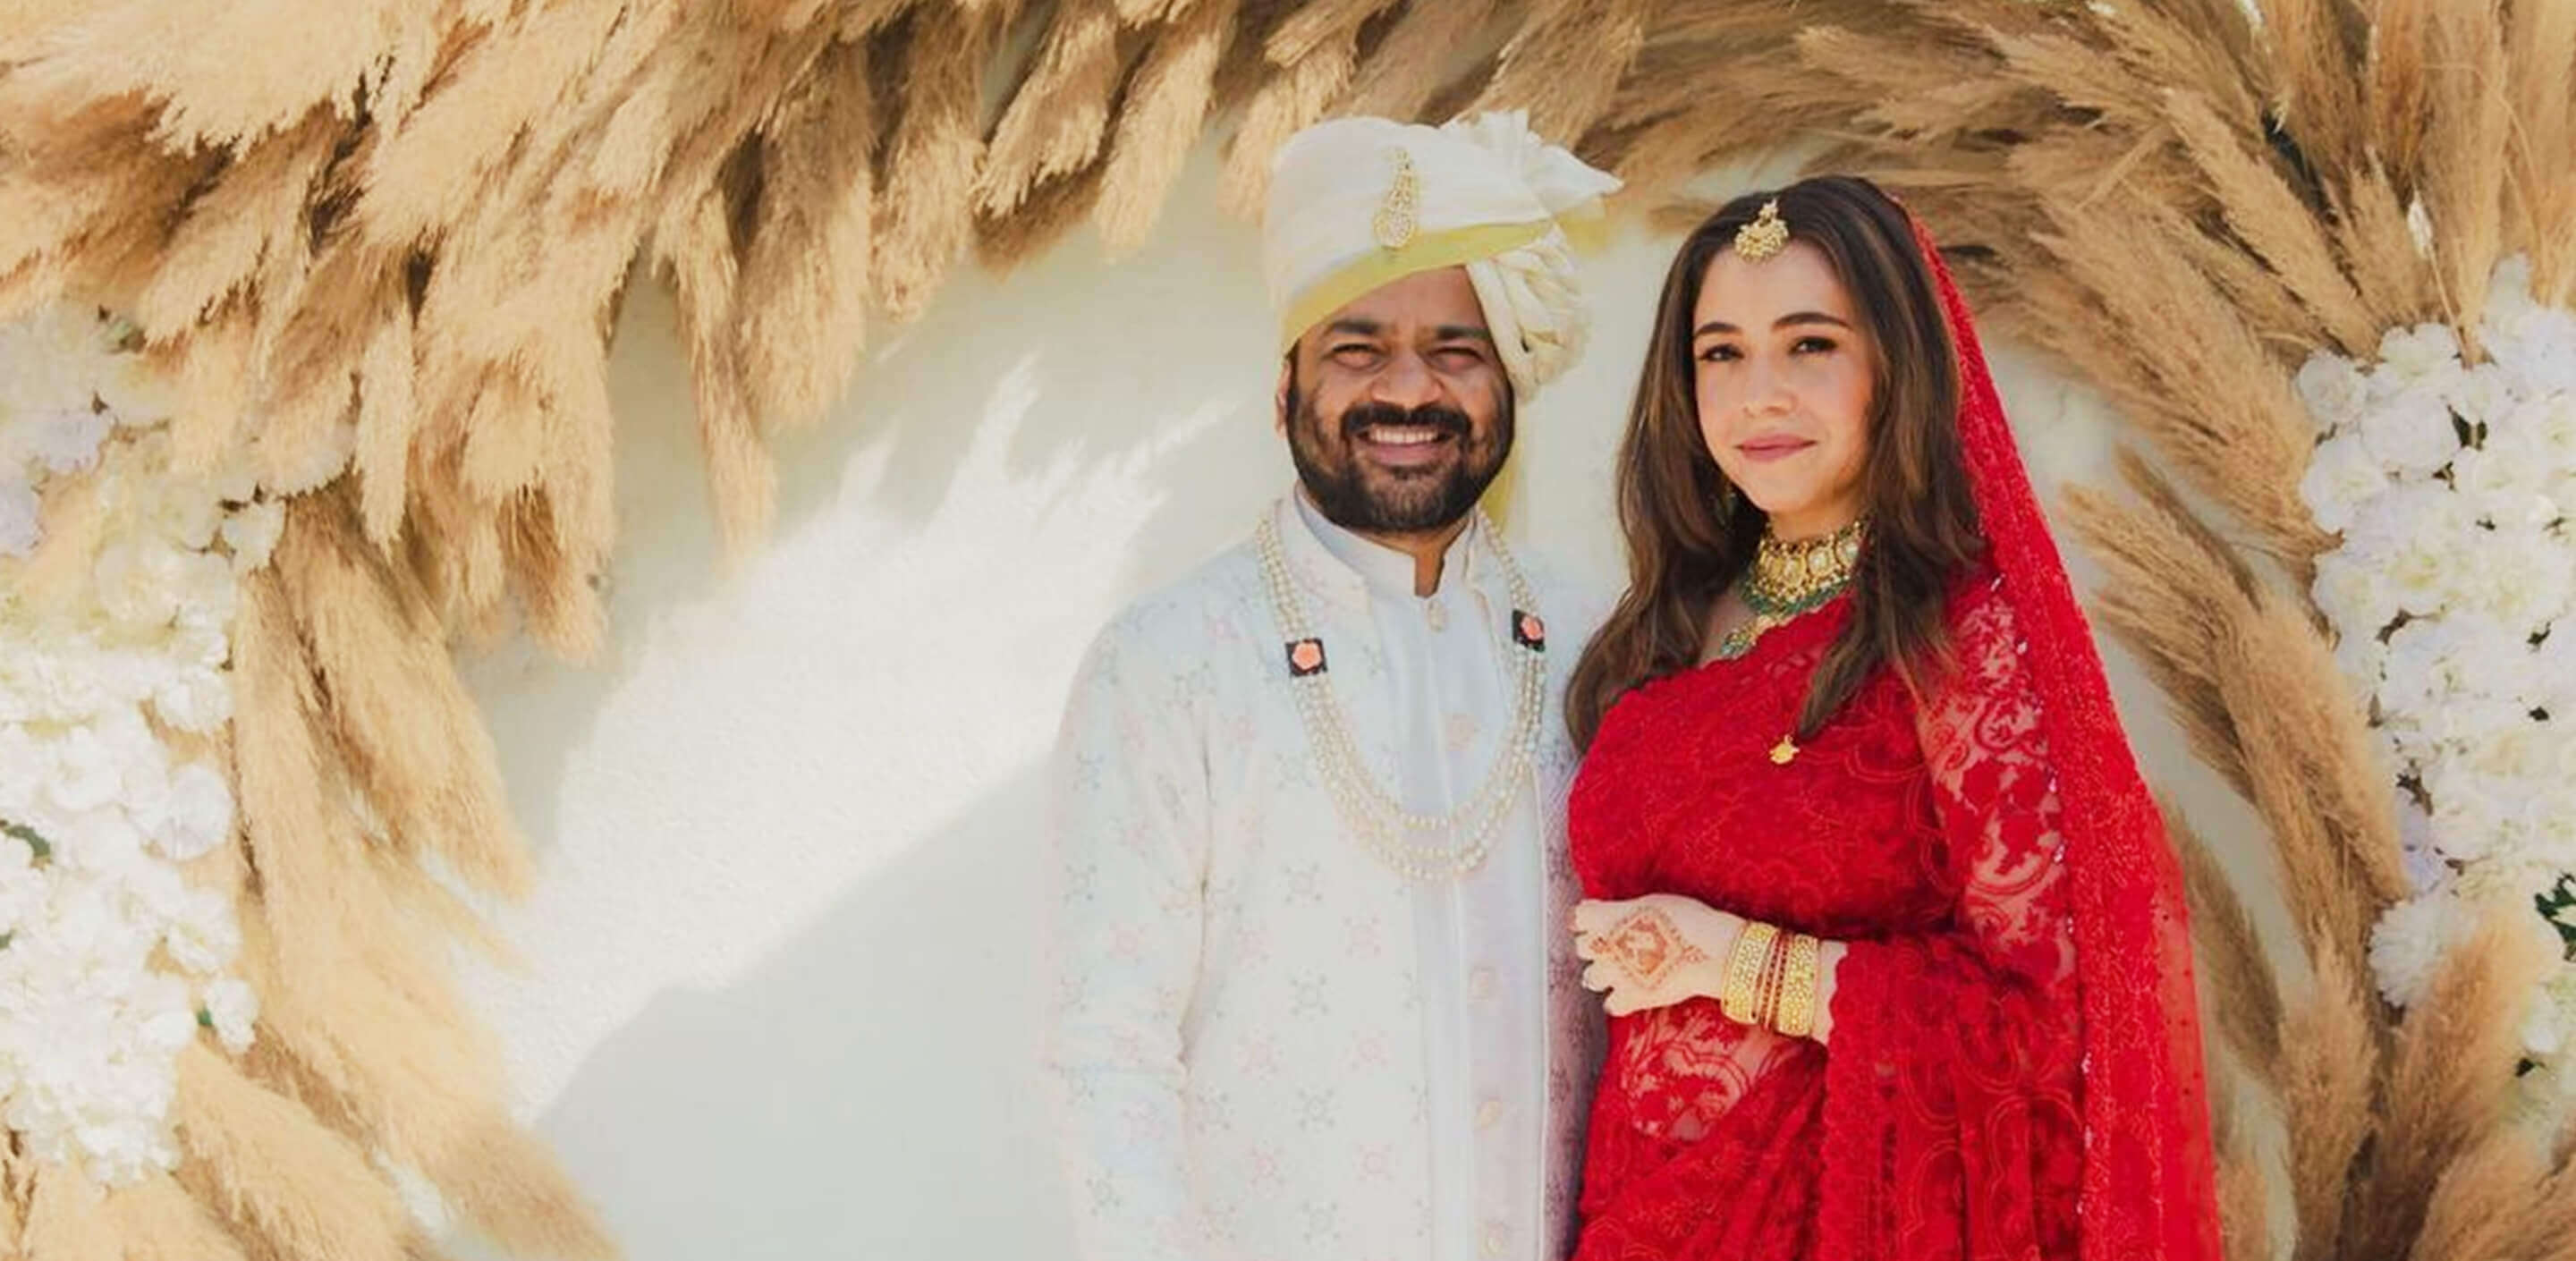 Maanvi Gagroo: Another Bollywood Wedding Look Decode